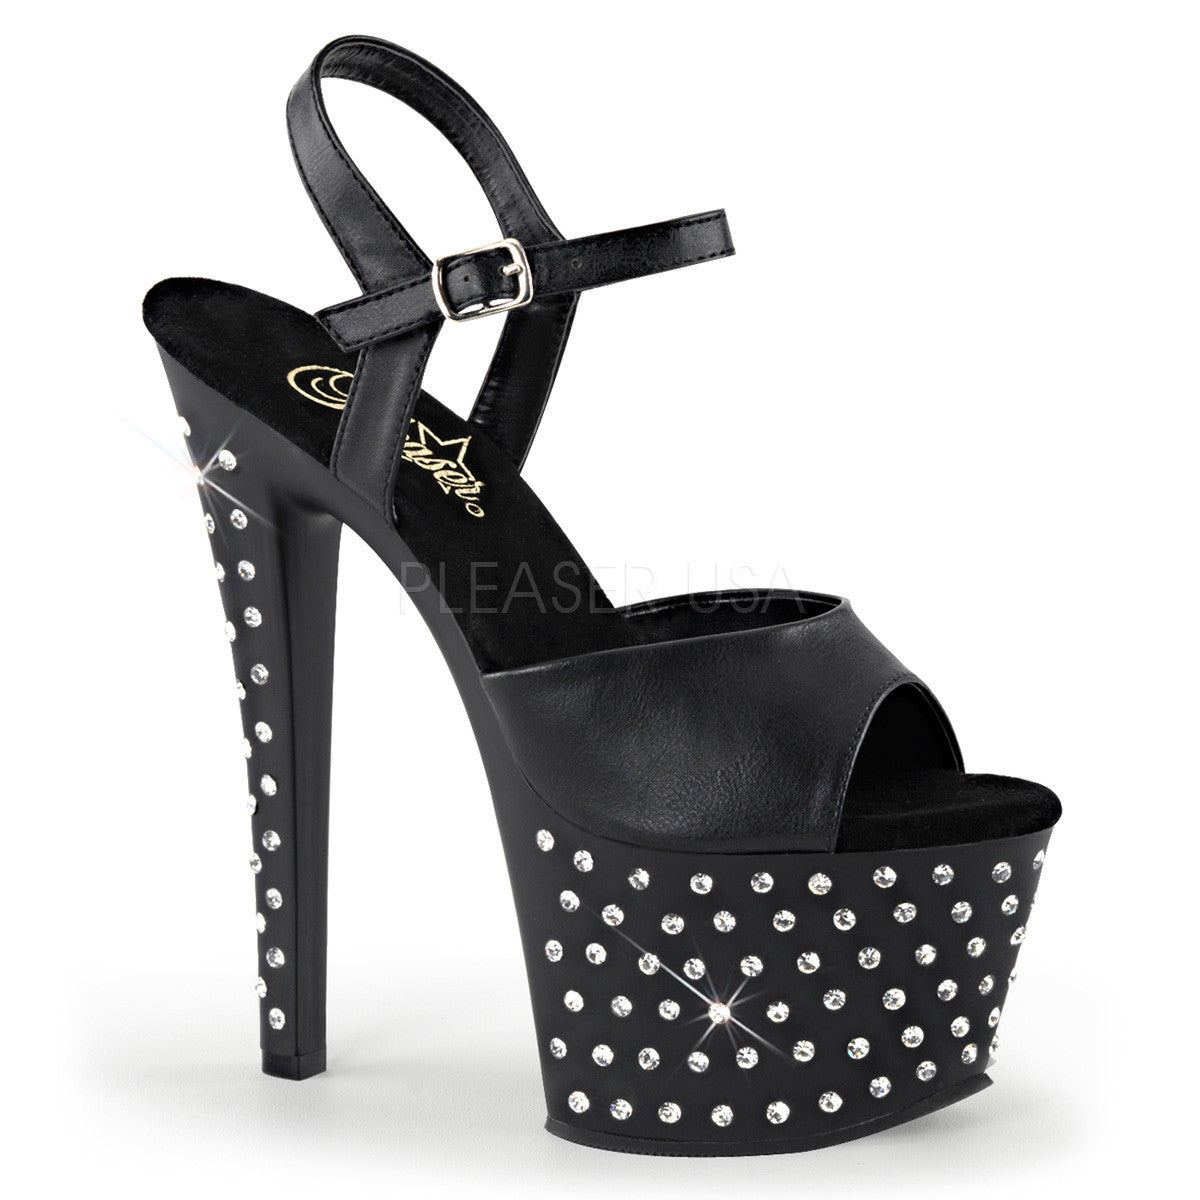 Pleaser STARDUST-709 Black Faux Leather Ankle Strap Sandals With Black Matte Platform - Shoecup.com